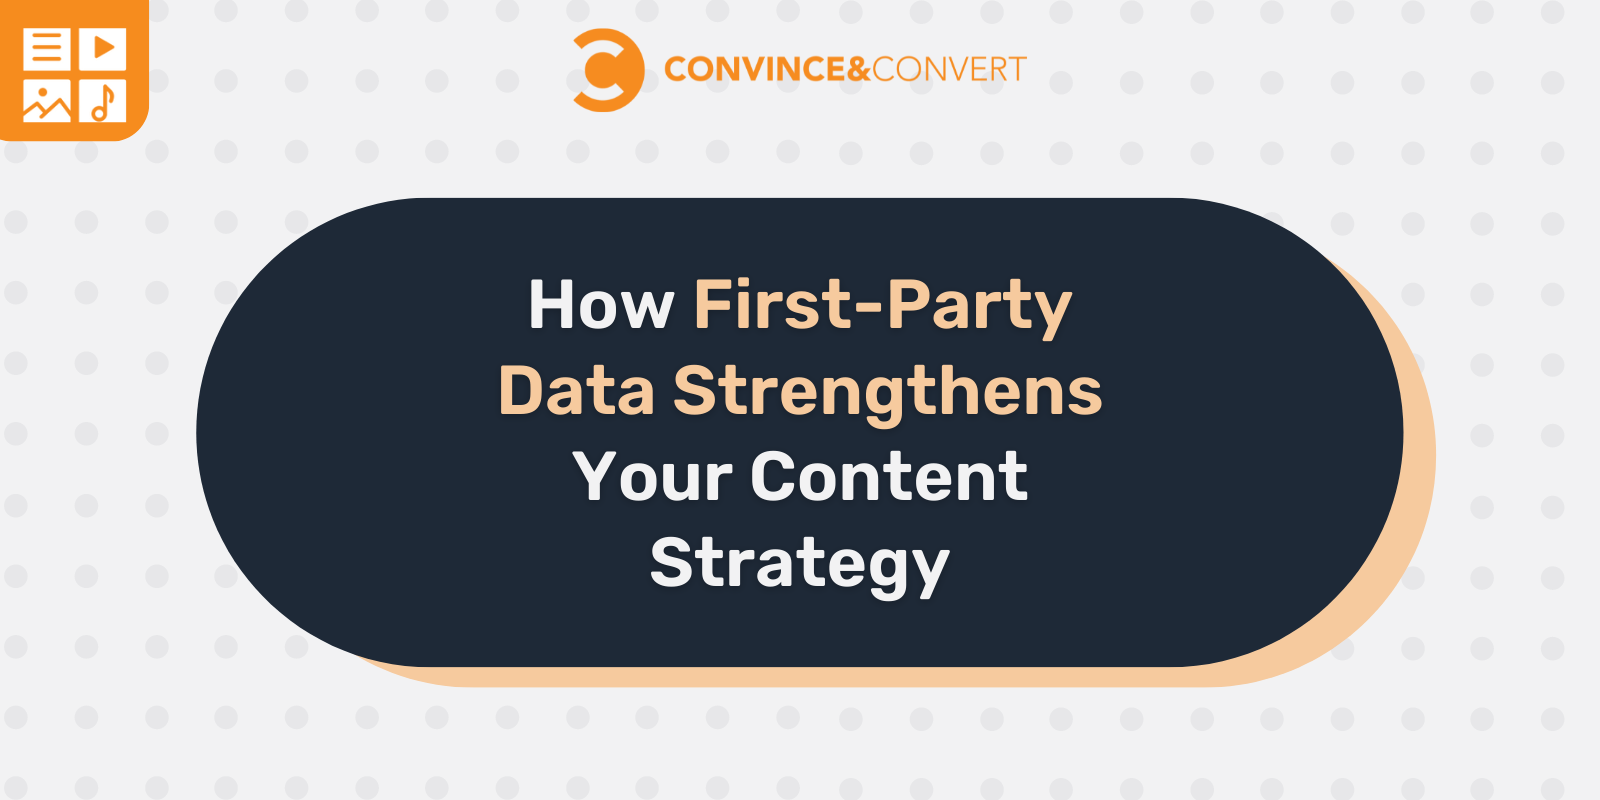 In che modo i dati proprietari rafforzano la tua strategia di contenuti